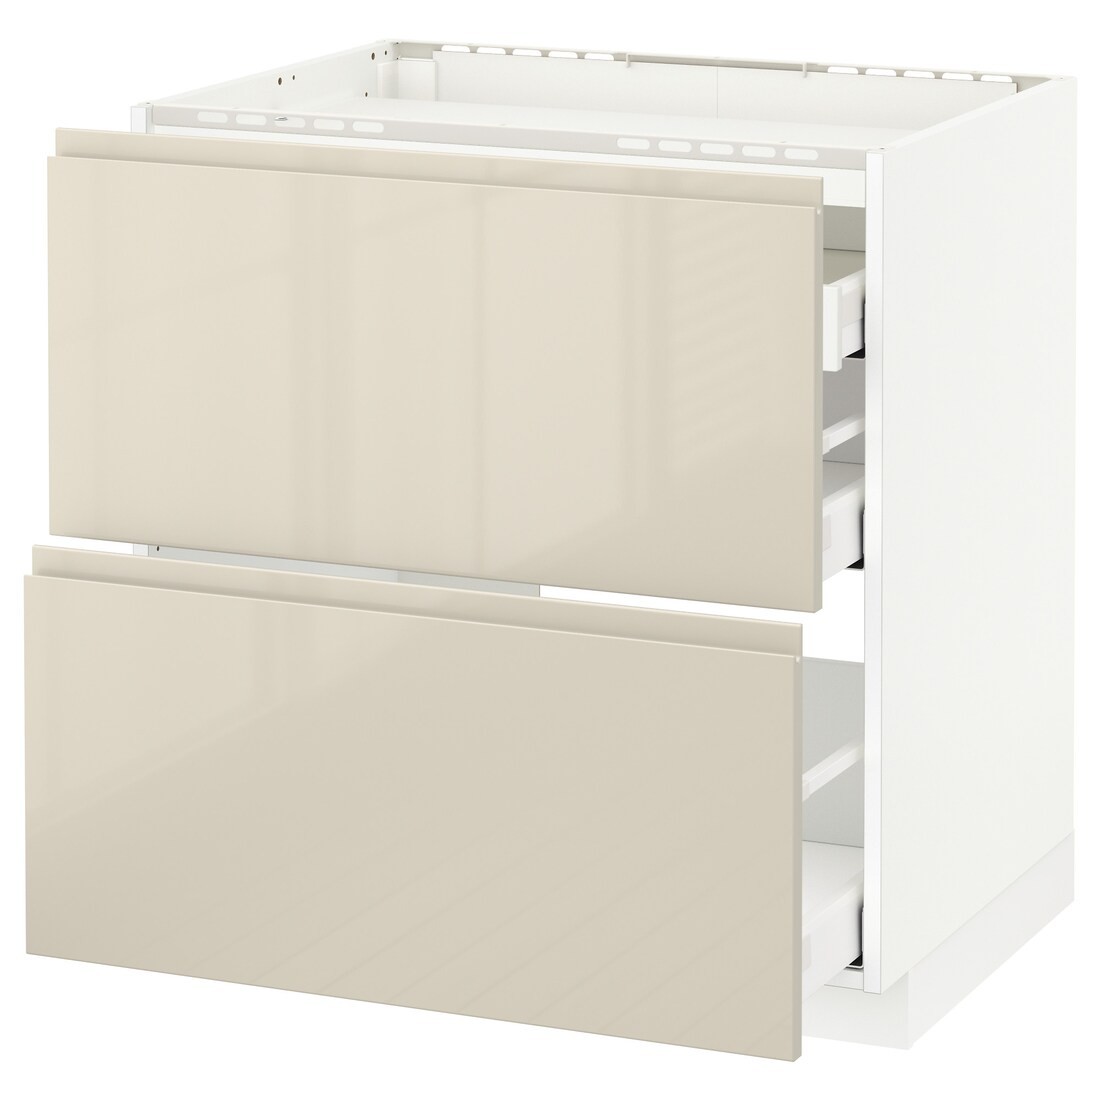 IKEA METOD МЕТОД / MAXIMERA МАКСИМЕРА Напольный шкаф с ящиками, белый / Voxtorp глянцевый светло-бежевый, 80x60 см 99143364 991.433.64